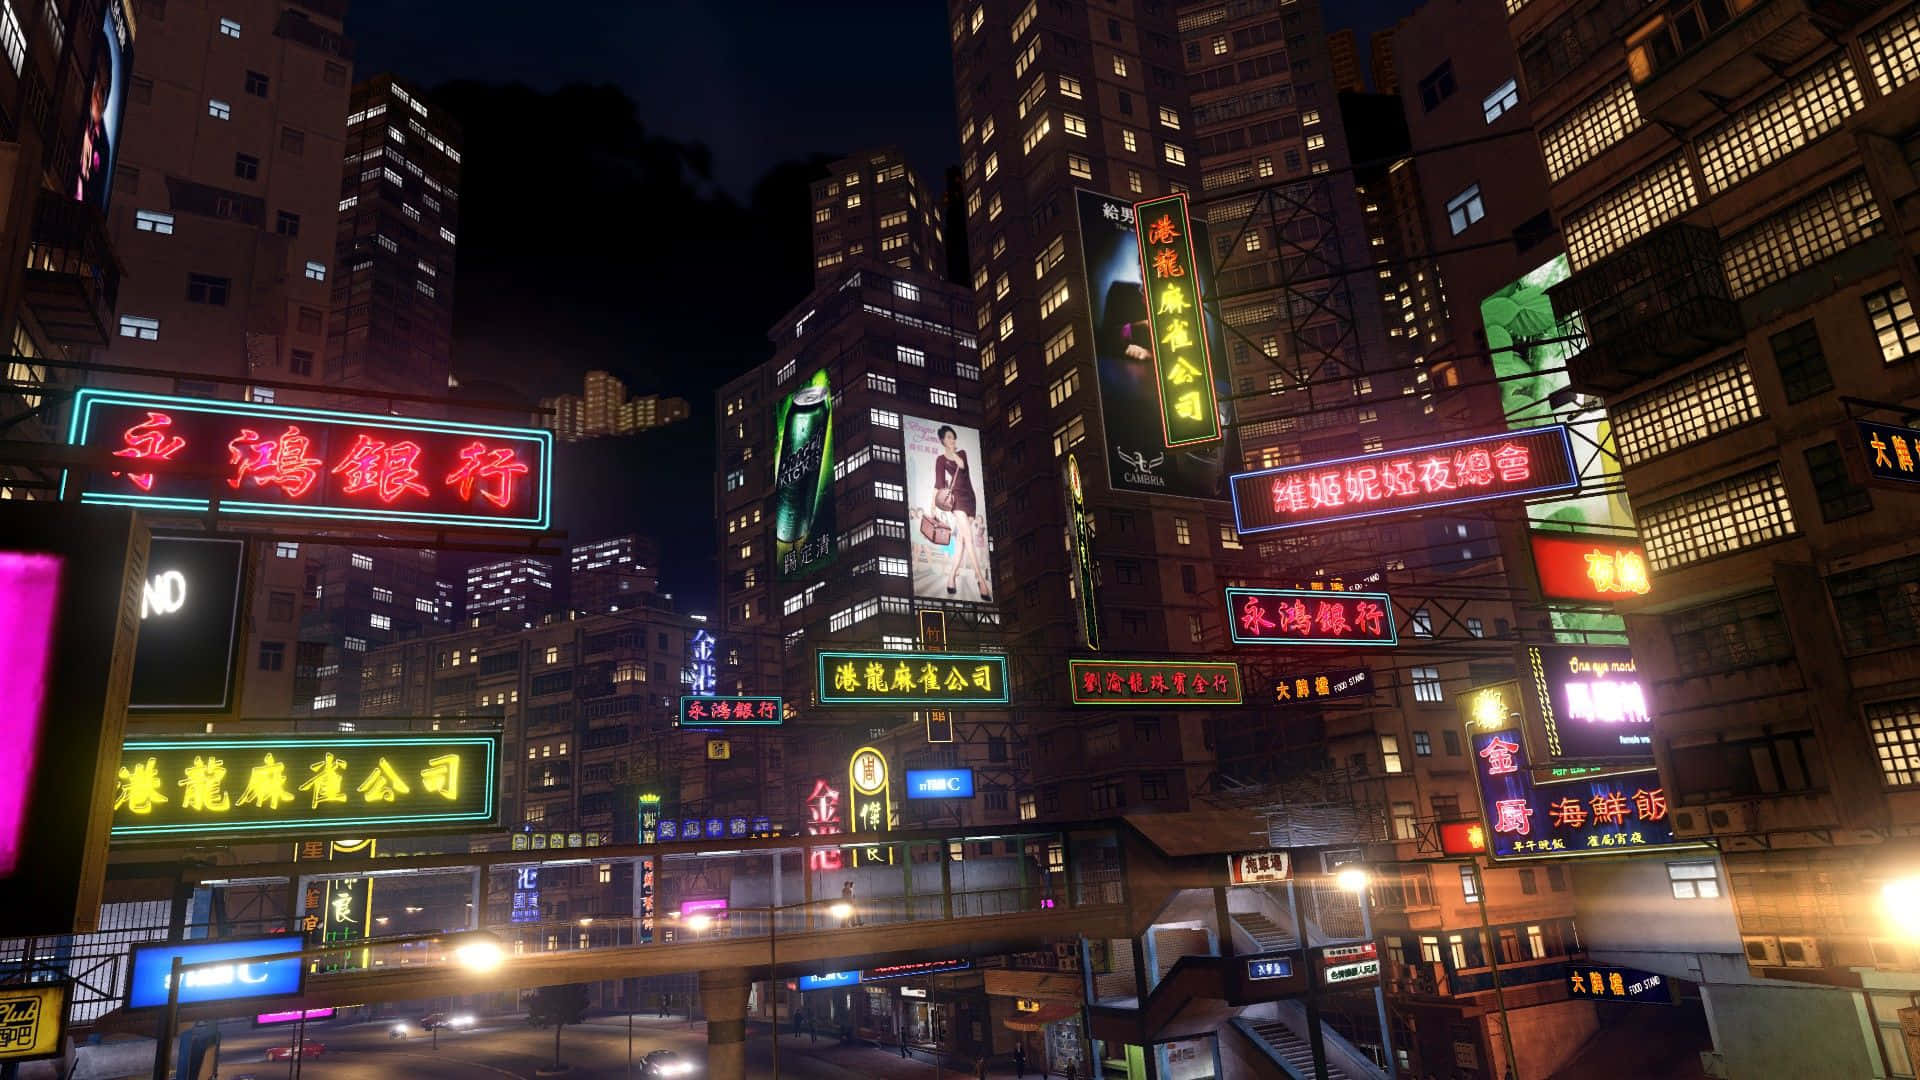 Njutav Det Livliga Nattlivet I Hongkong I Spelet Sleeping Dogs